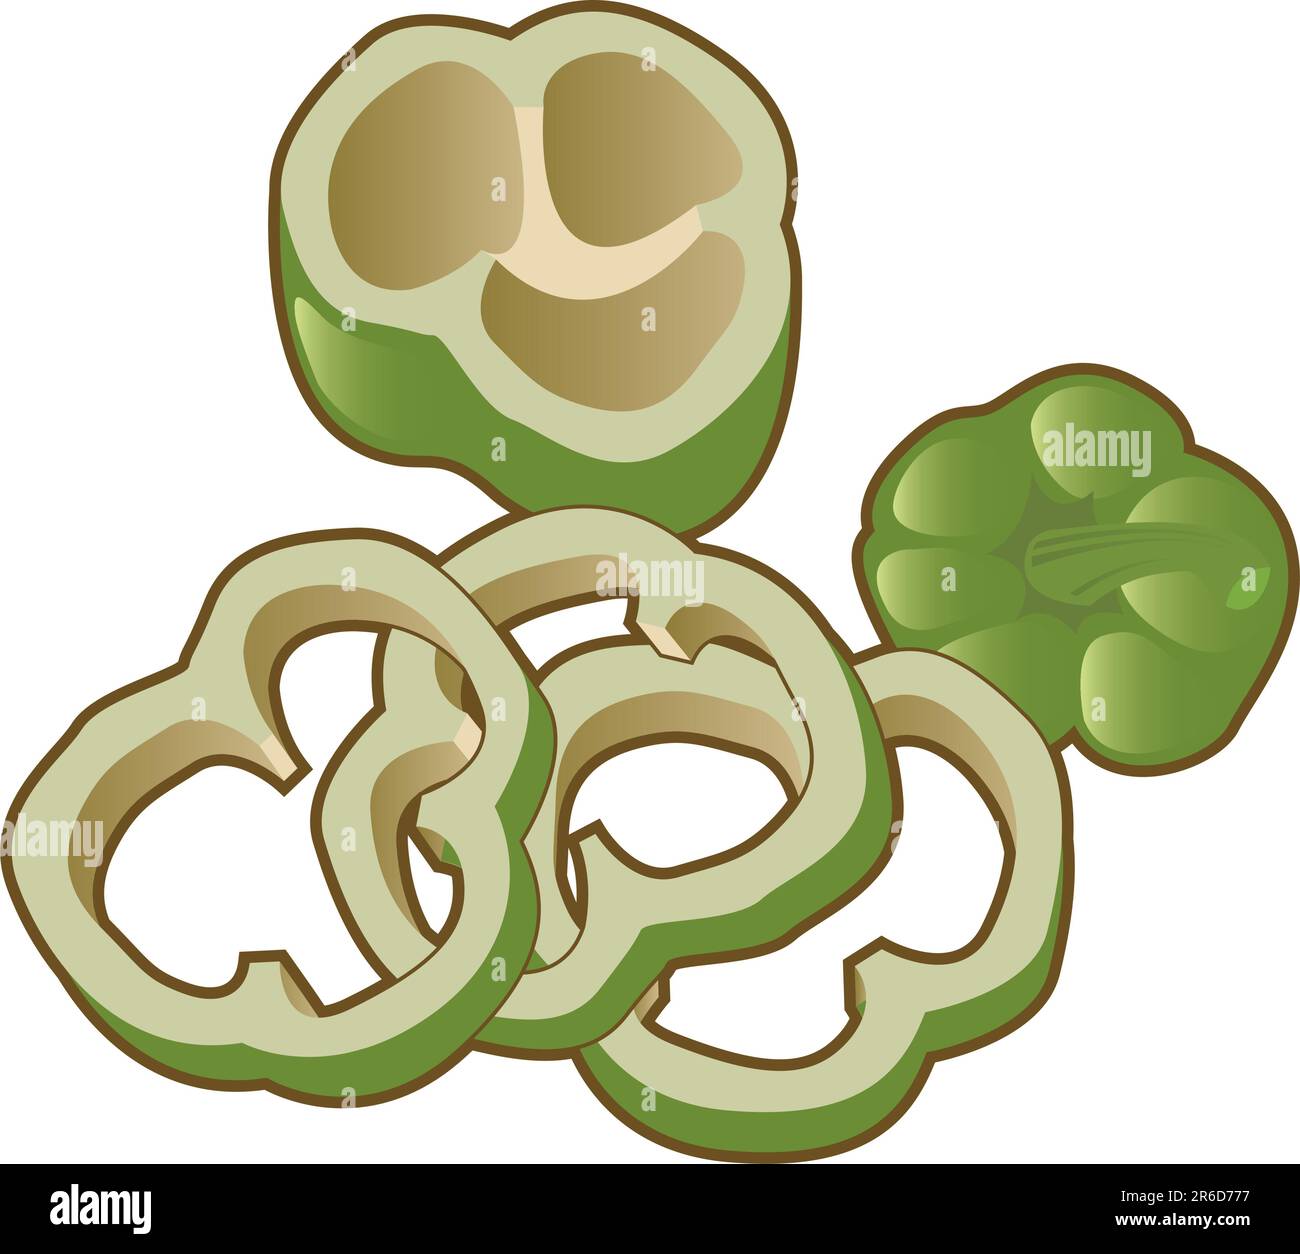 Illustrazione vettoriale di un peperone verde dolce. Il file include la vista dall'alto, la vista interna e le fette del pepe. Illustrazione Vettoriale